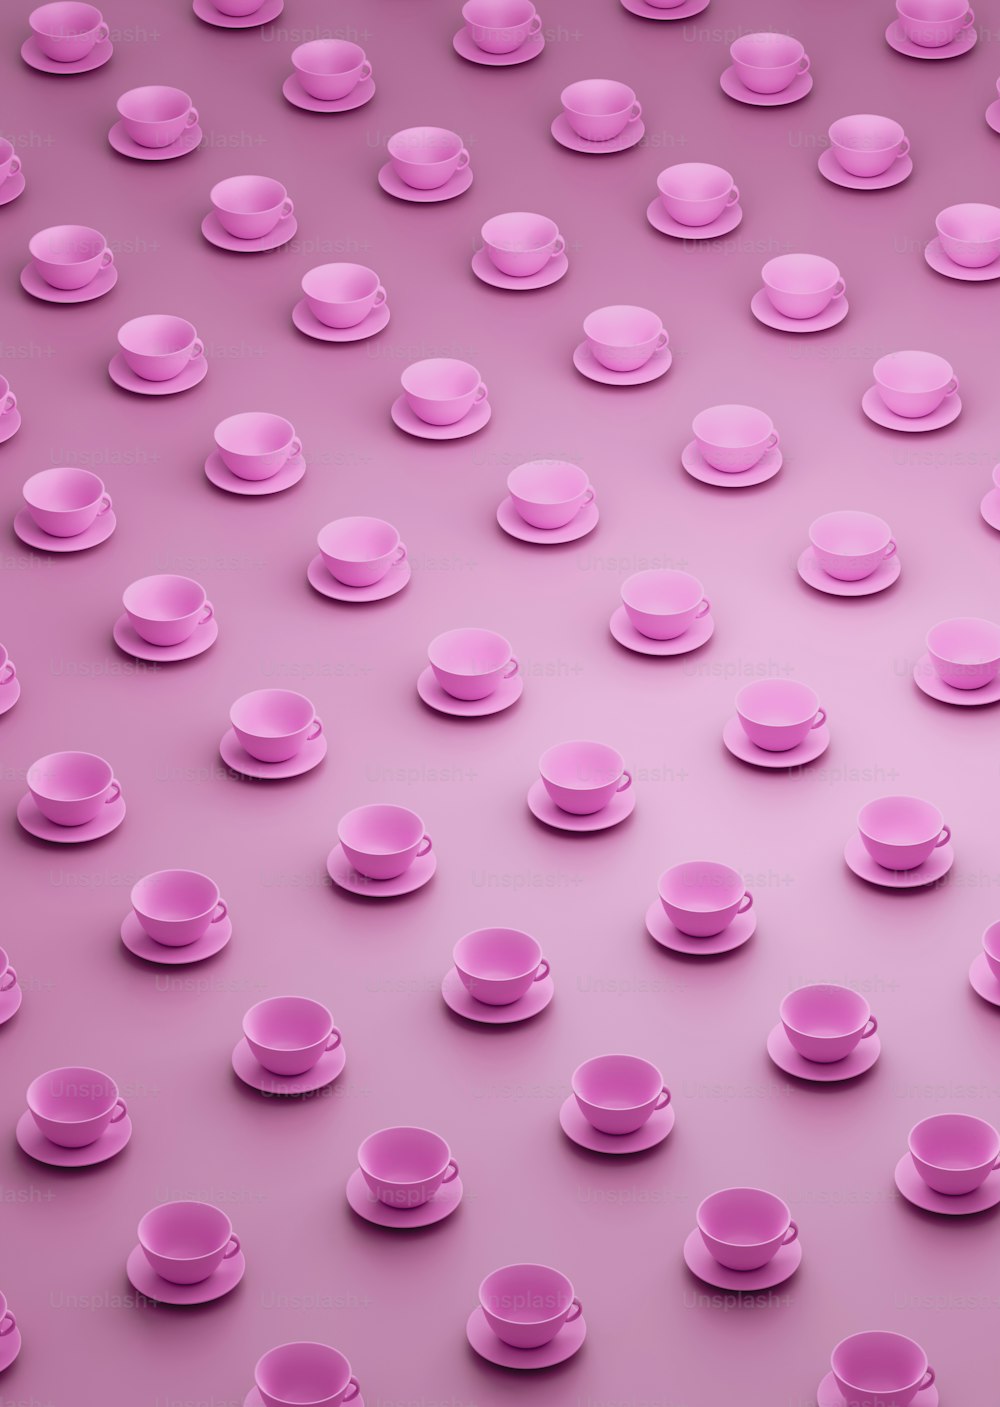 eine Gruppe rosa Tassen und Untertassen auf rosa Hintergrund